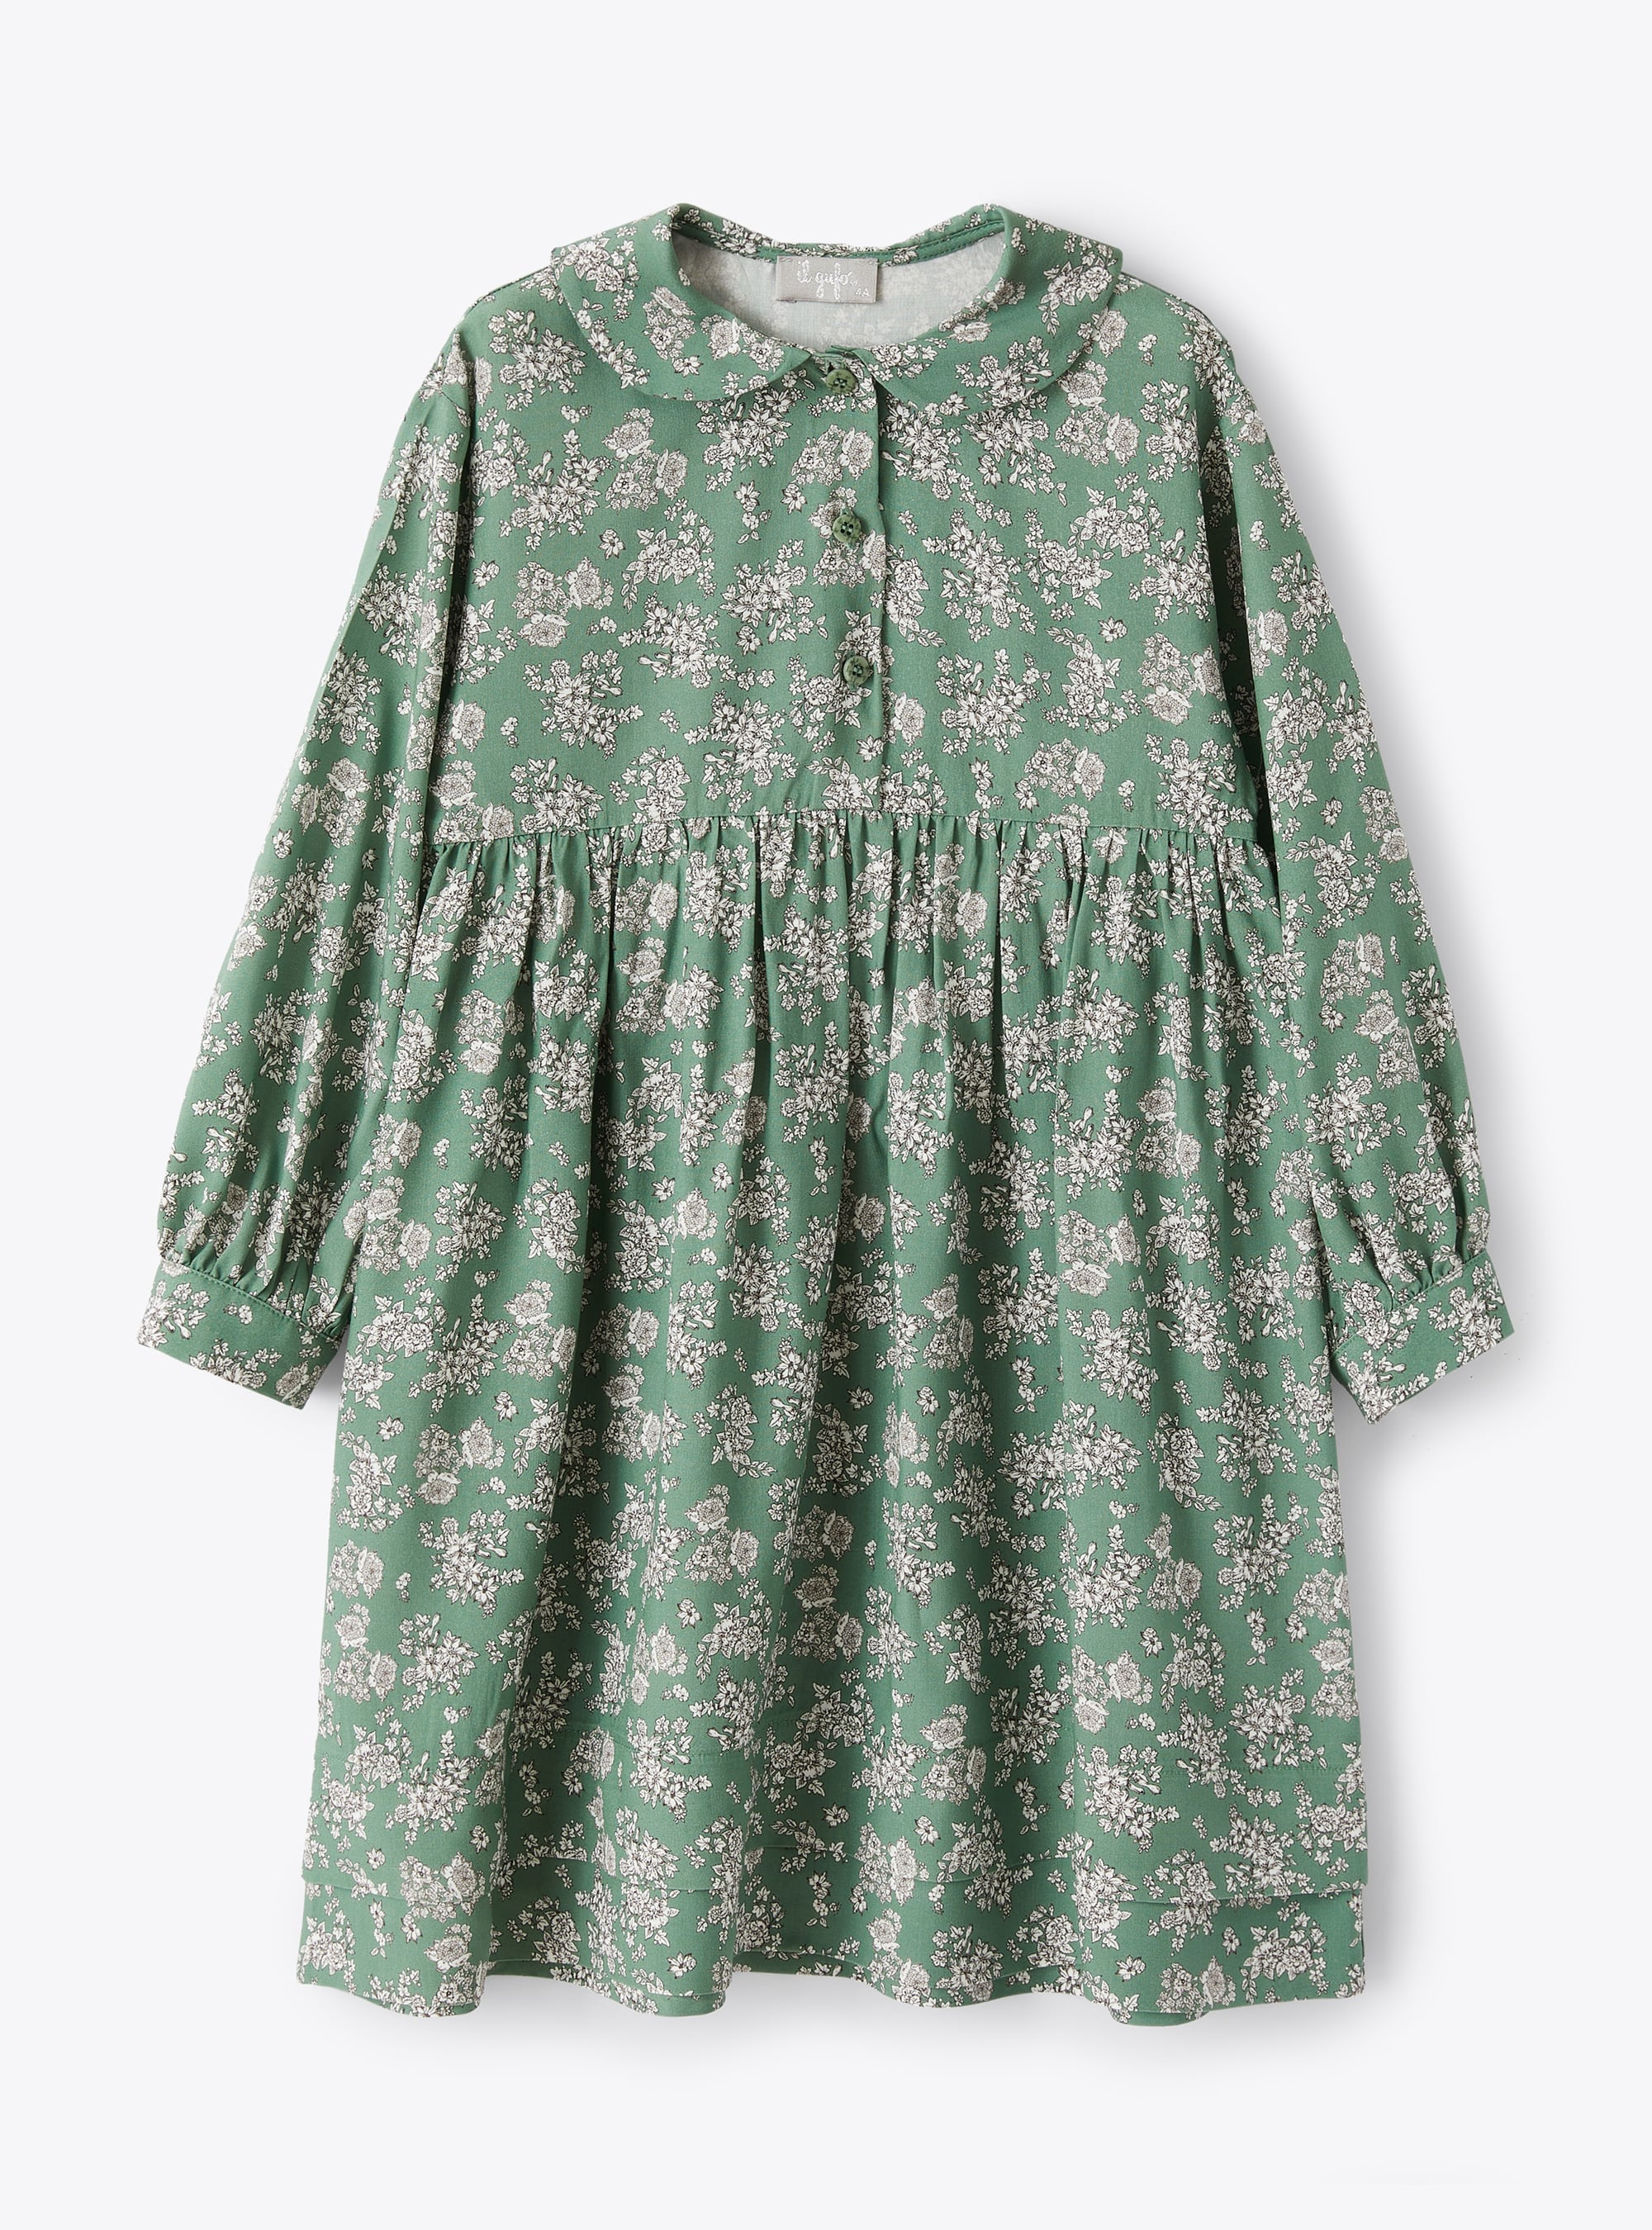 Floral print green dress - Dresses - Il Gufo